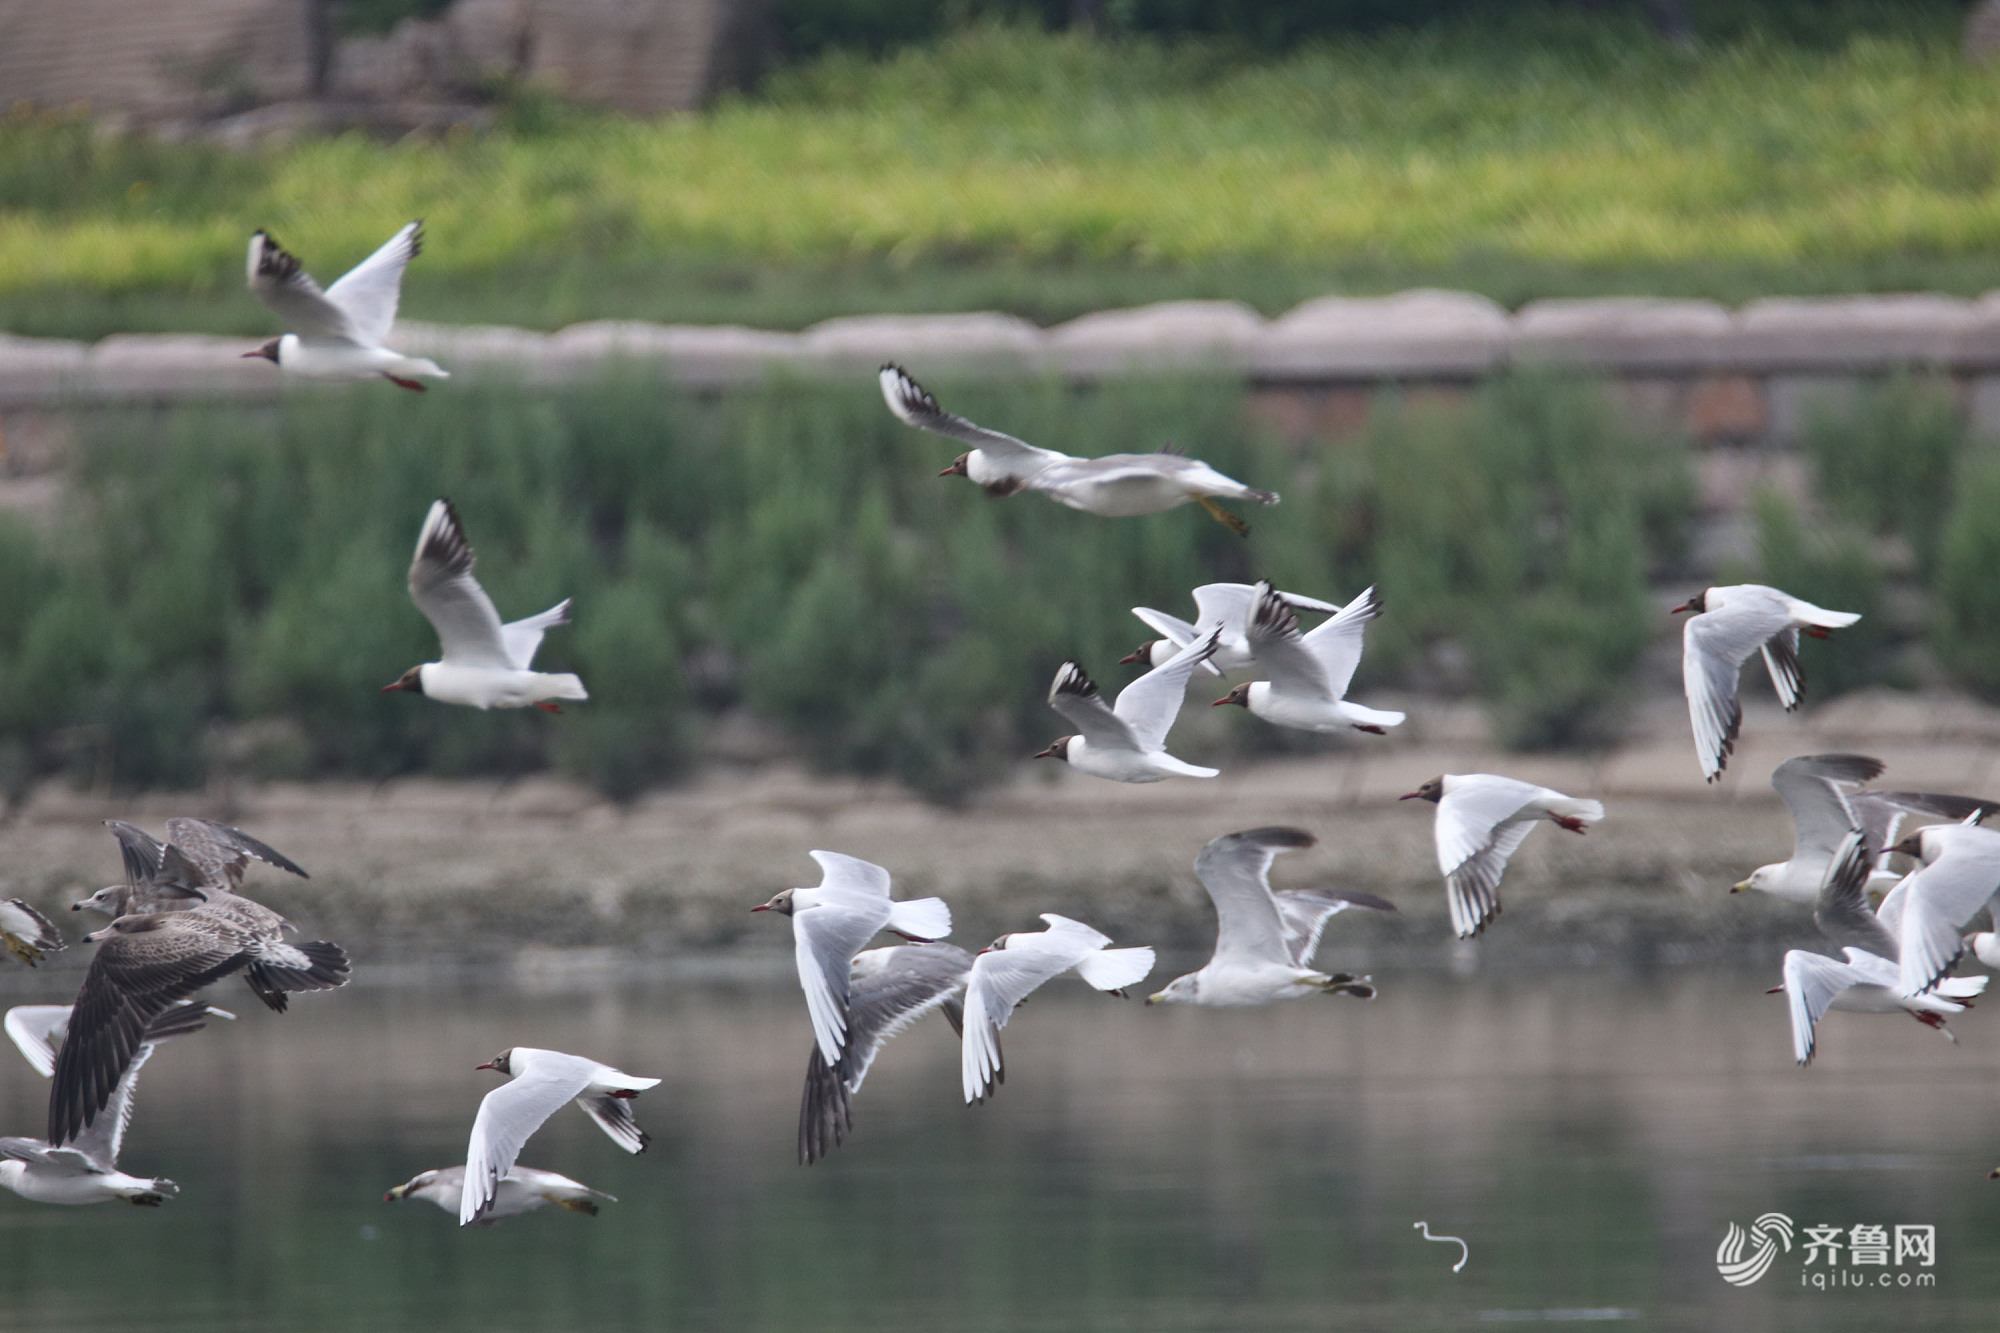 上千只水鸟扎堆胶州湾河口避暑觅食 享受海鲜宴